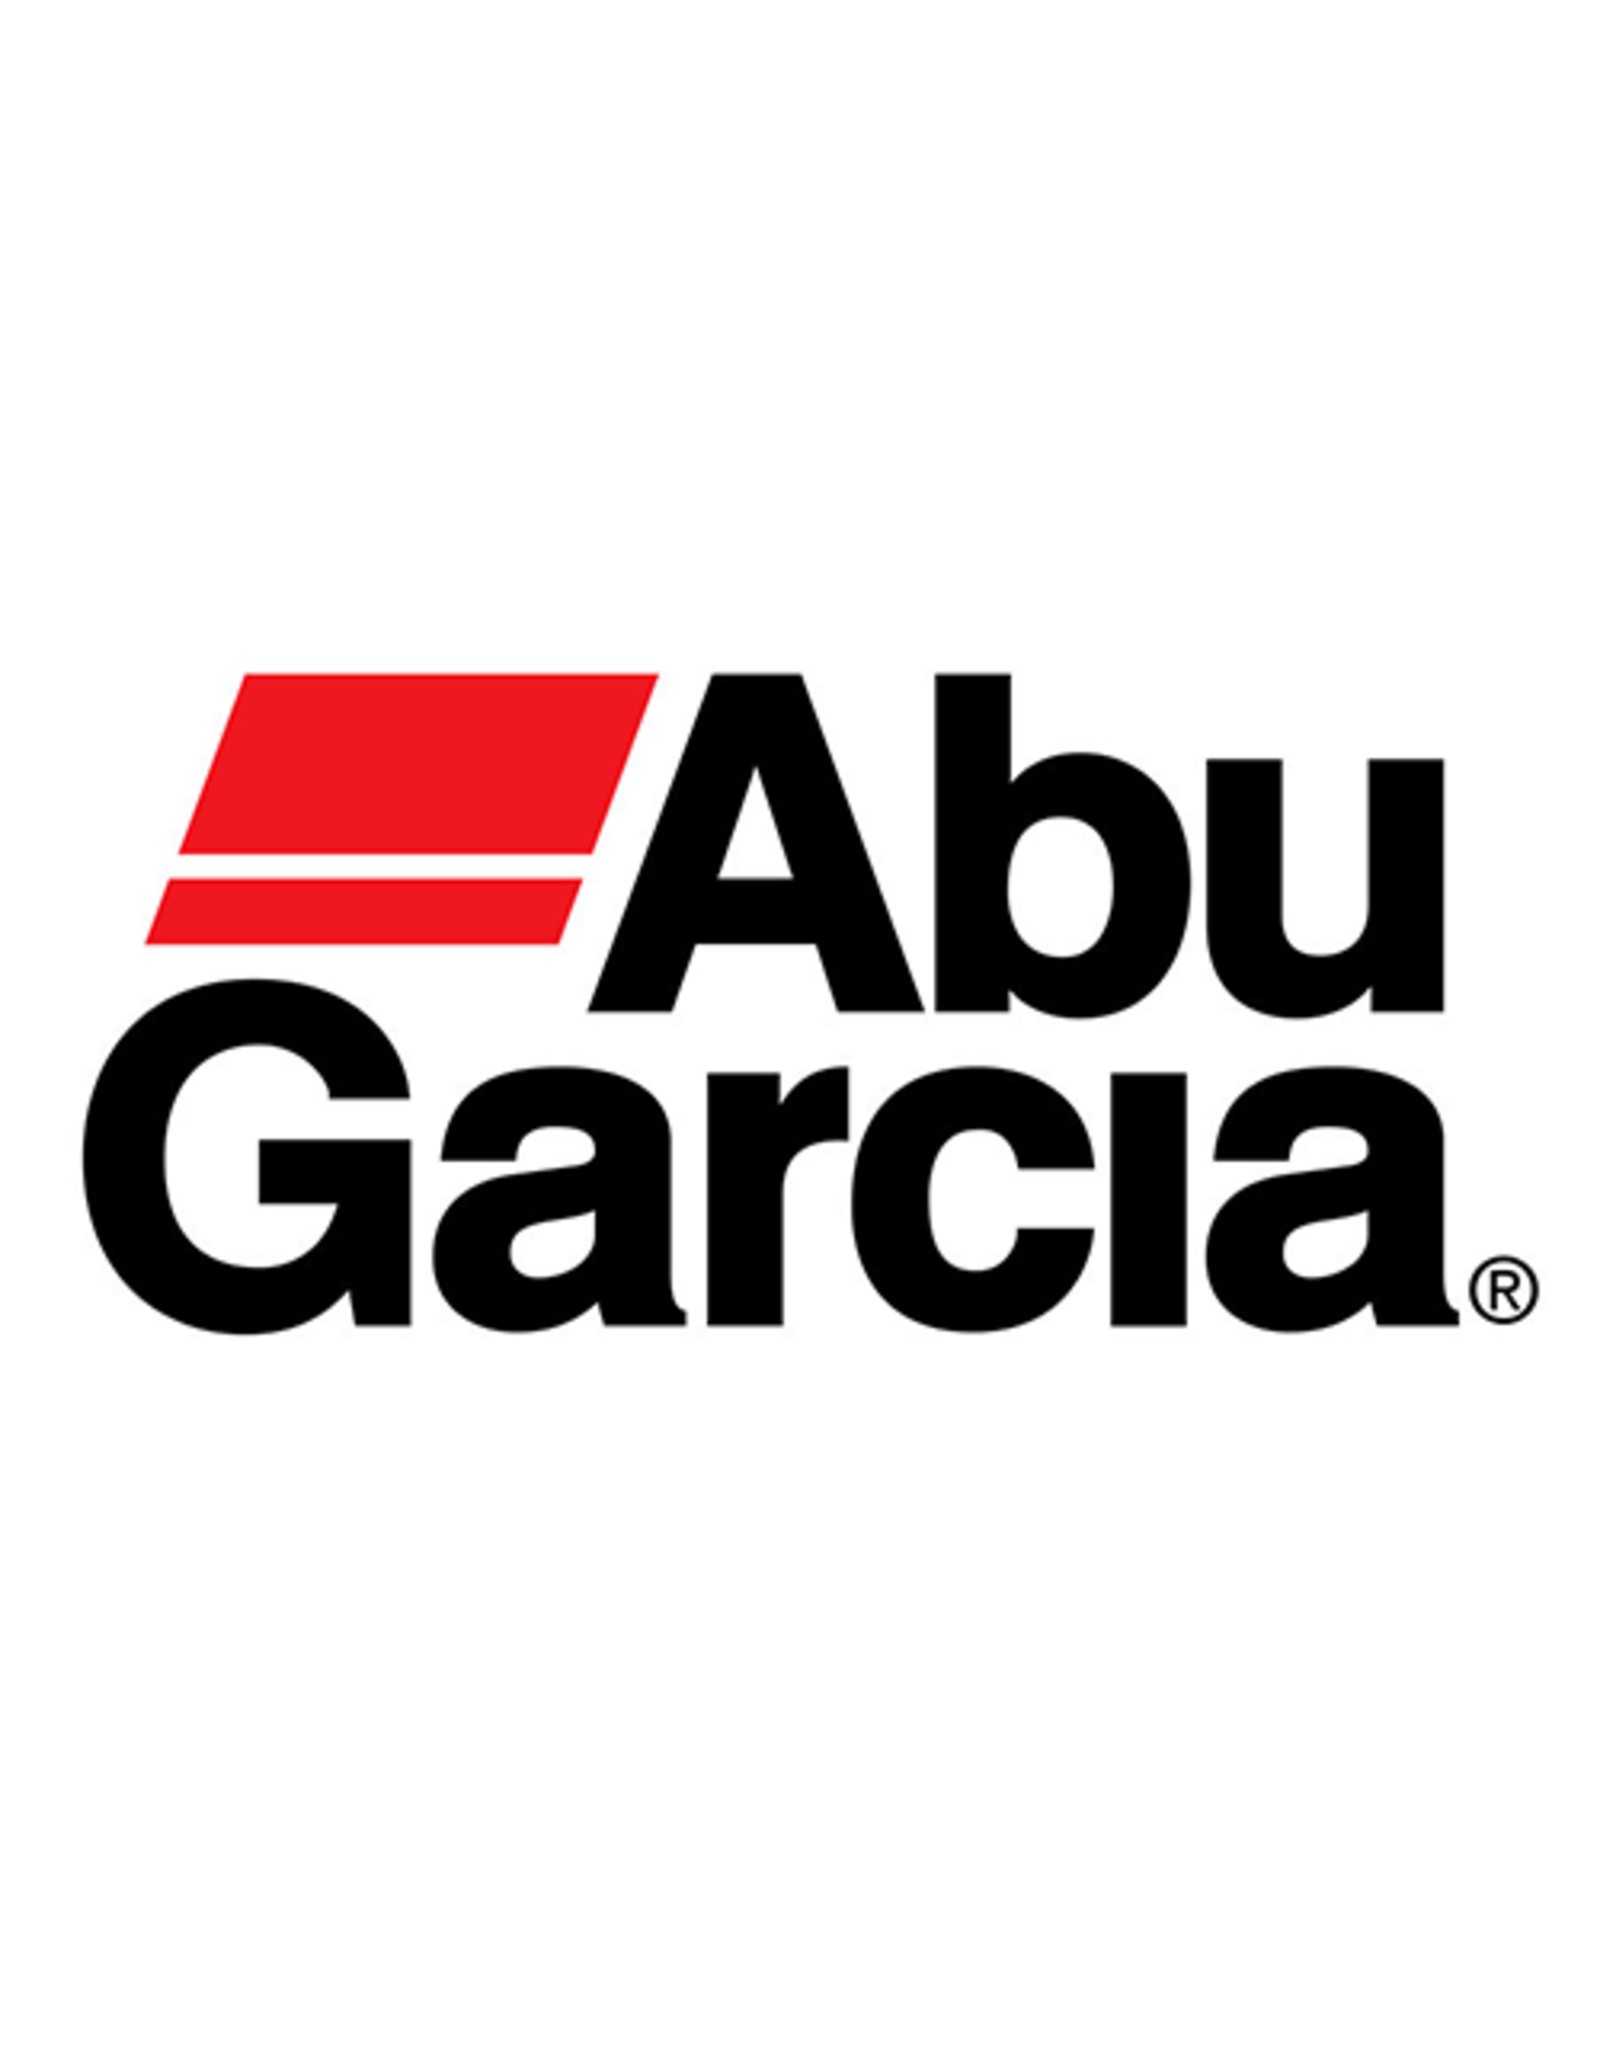 Abu Garcia 1097307  HANDLE ASSEMBLY / NLA